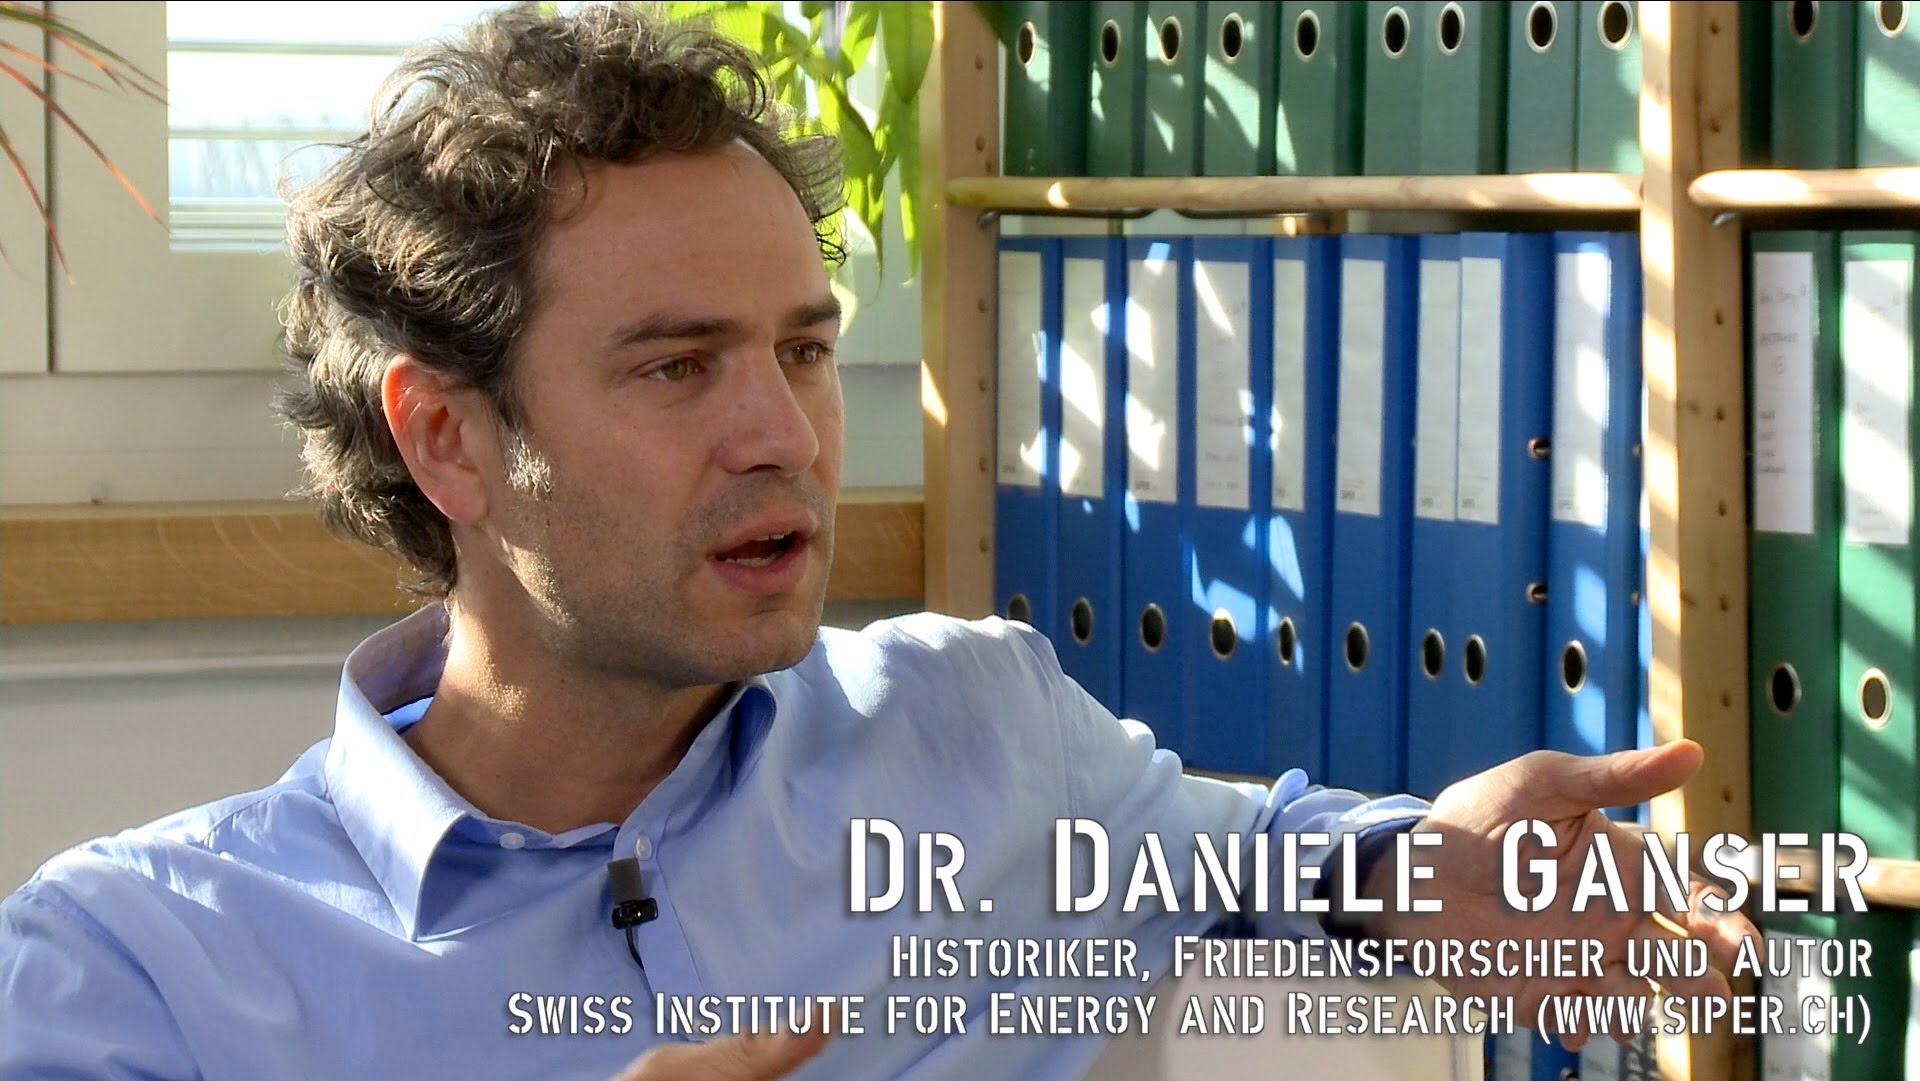 Dr. Daniele Ganser